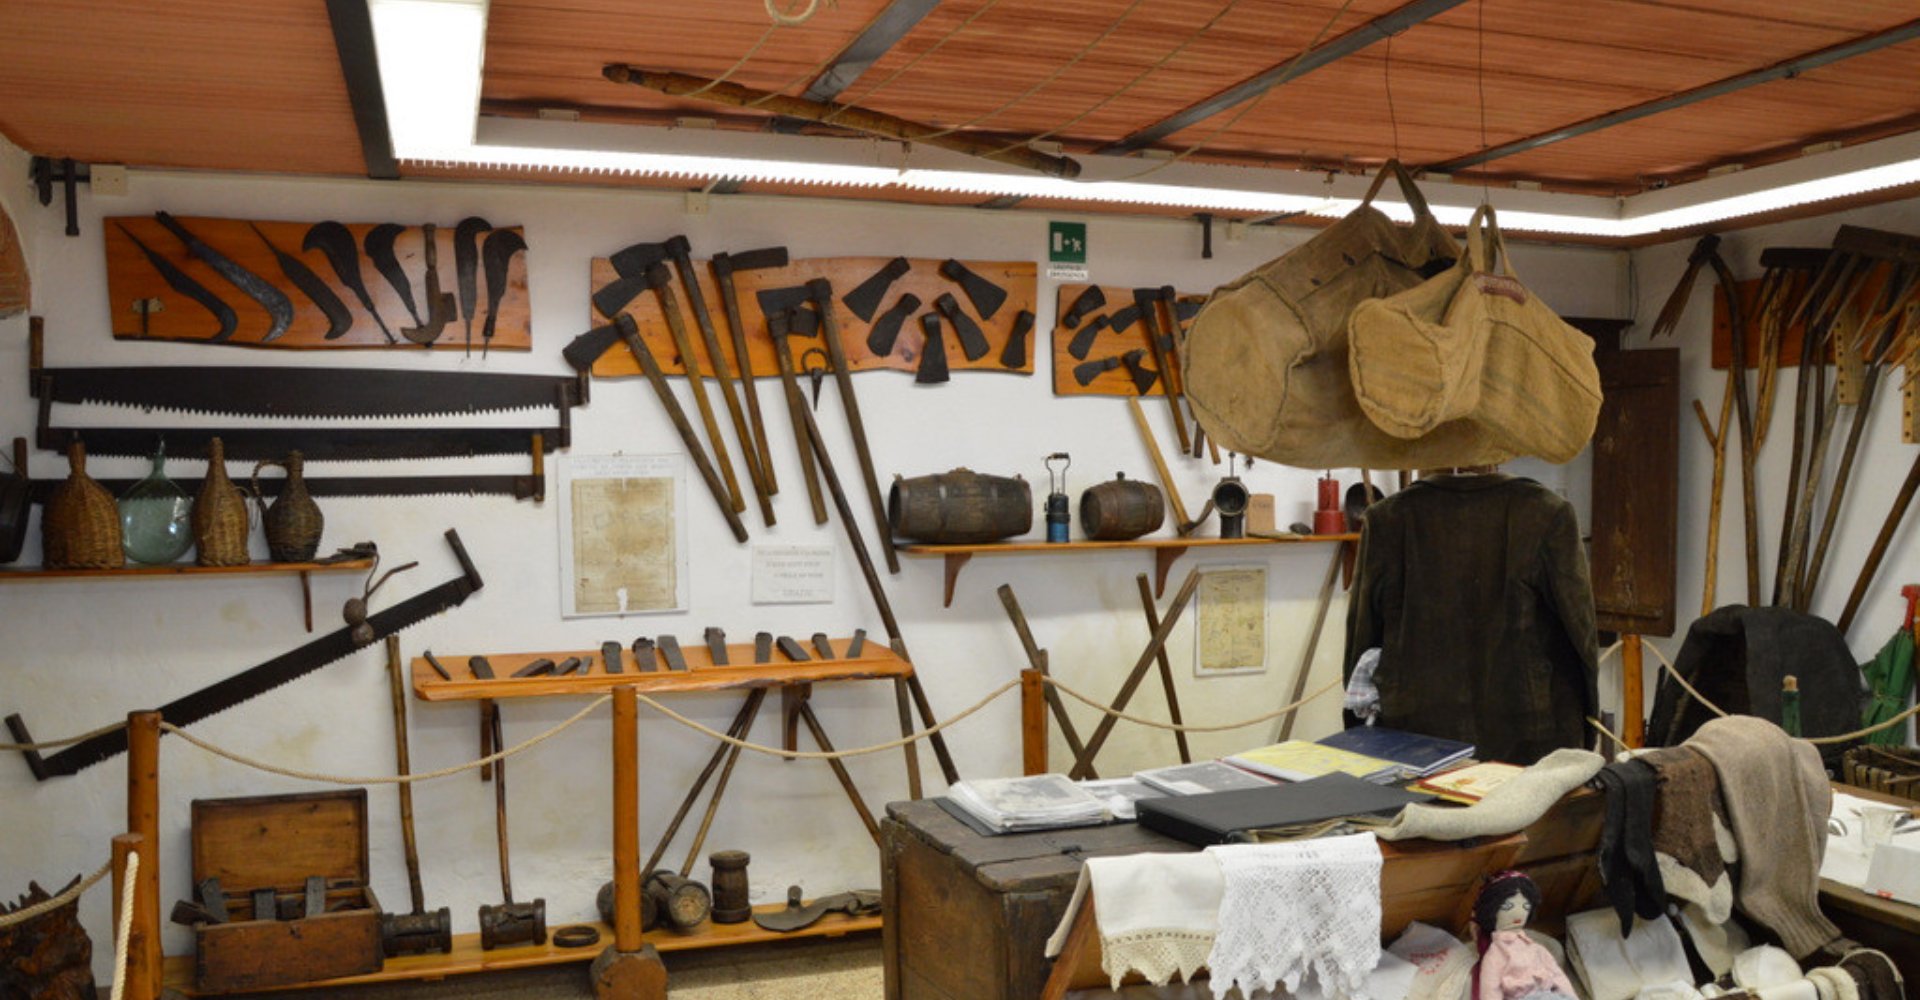 Coalman Museum Pistoia